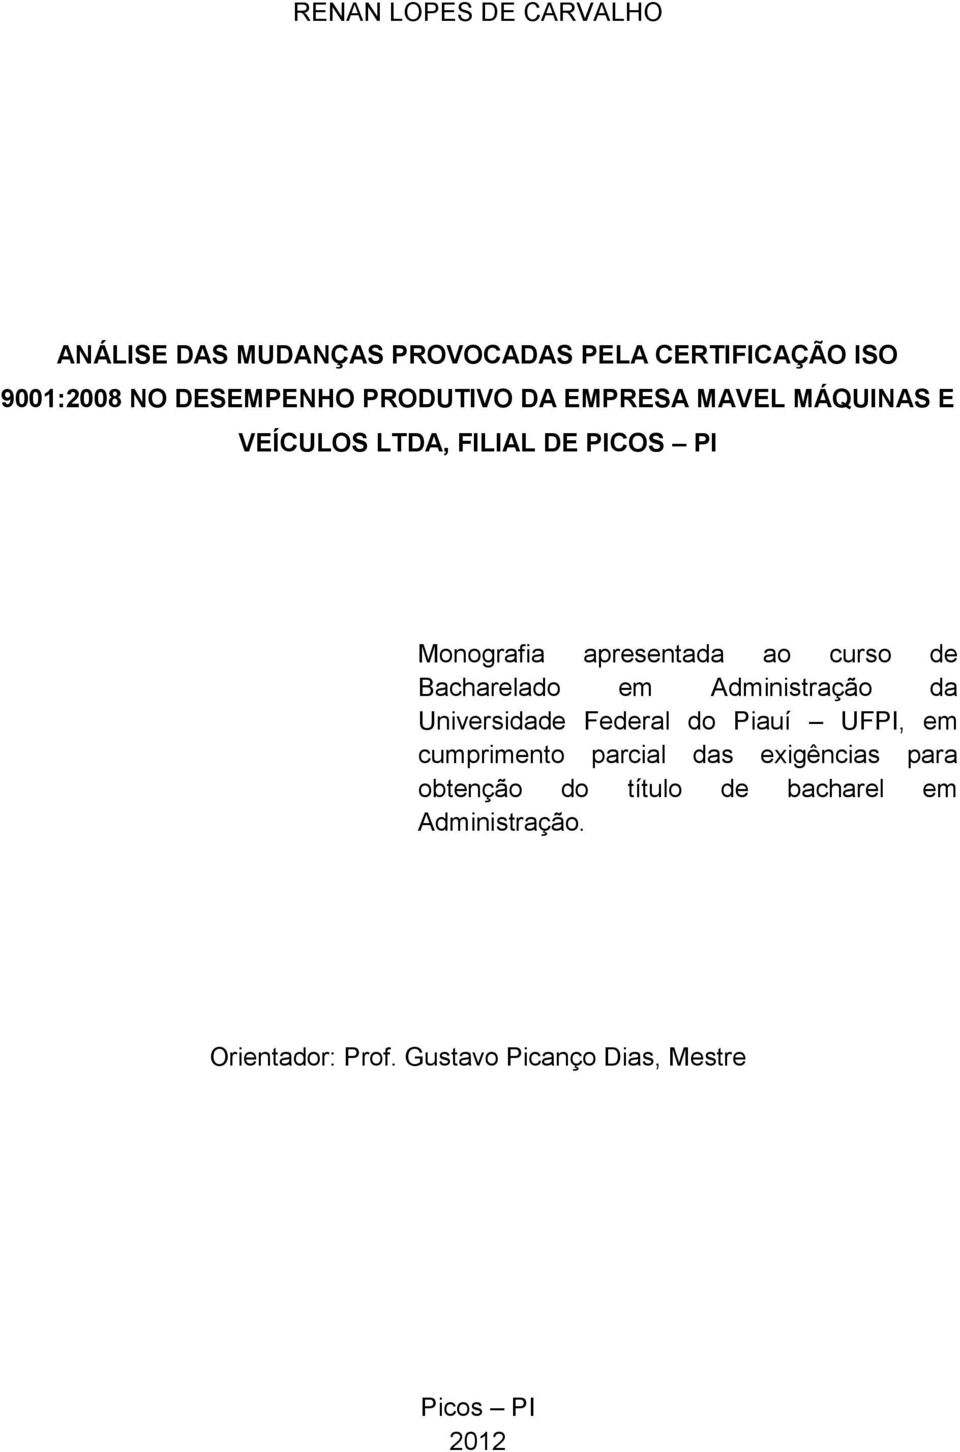 Bacharelado em Administração da Universidade Federal do Piauí UFPI, em cumprimento parcial das exigências